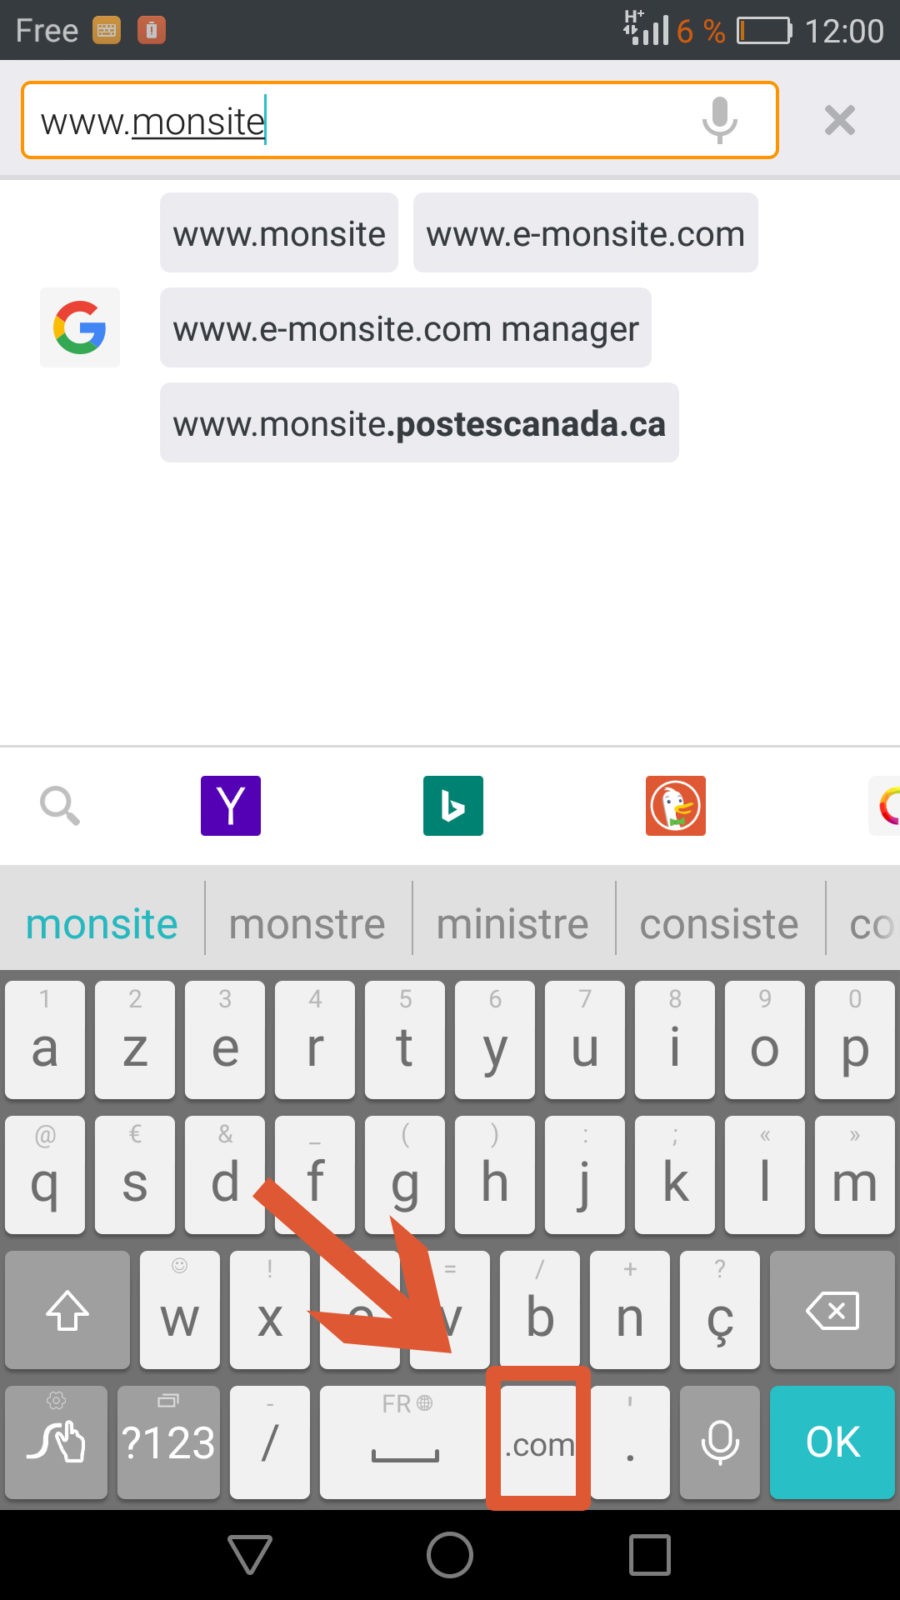 Les claviers de smartphones intègrent d'origine un bouton .com